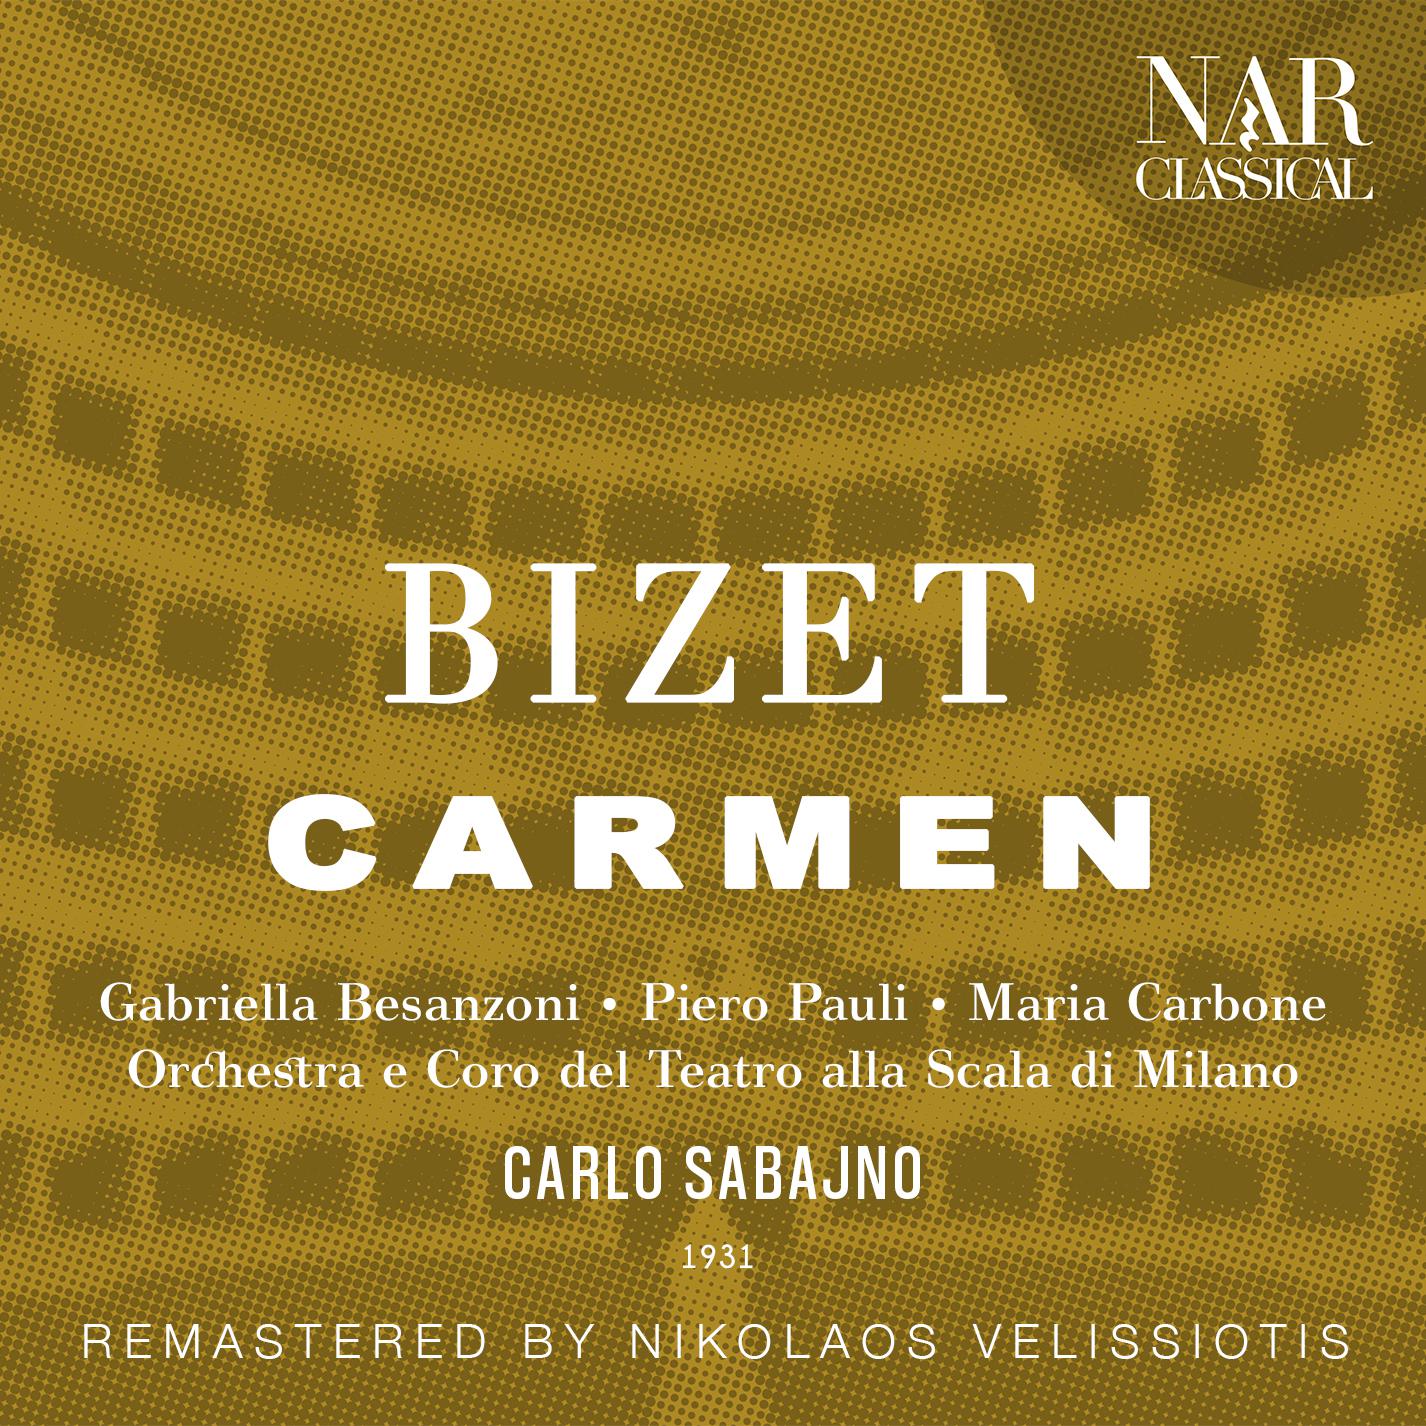 Carlo Sabajno - Carmen, GB 9, IGB 16, Act III: